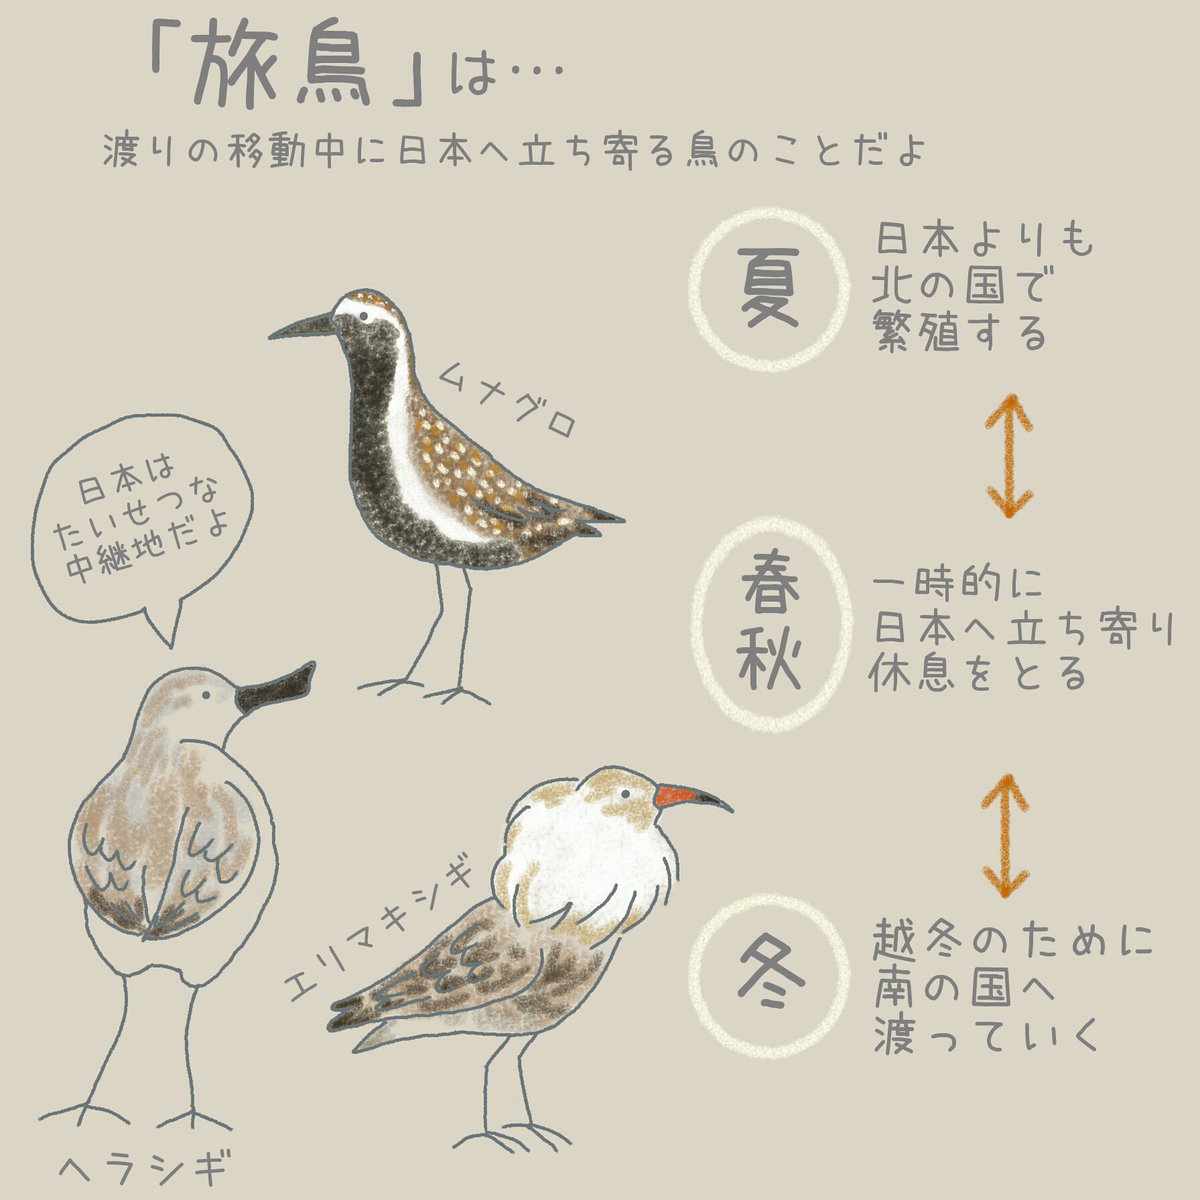 ヘラシギは渡り鳥の中で「旅鳥」と呼ばれているよ。
渡りの移動中に、日本に立ち寄る。
移動距離は片道1万km以上といわれているよ。

#イラスト 
#イラスト好きと繋がりたい 
#動物 